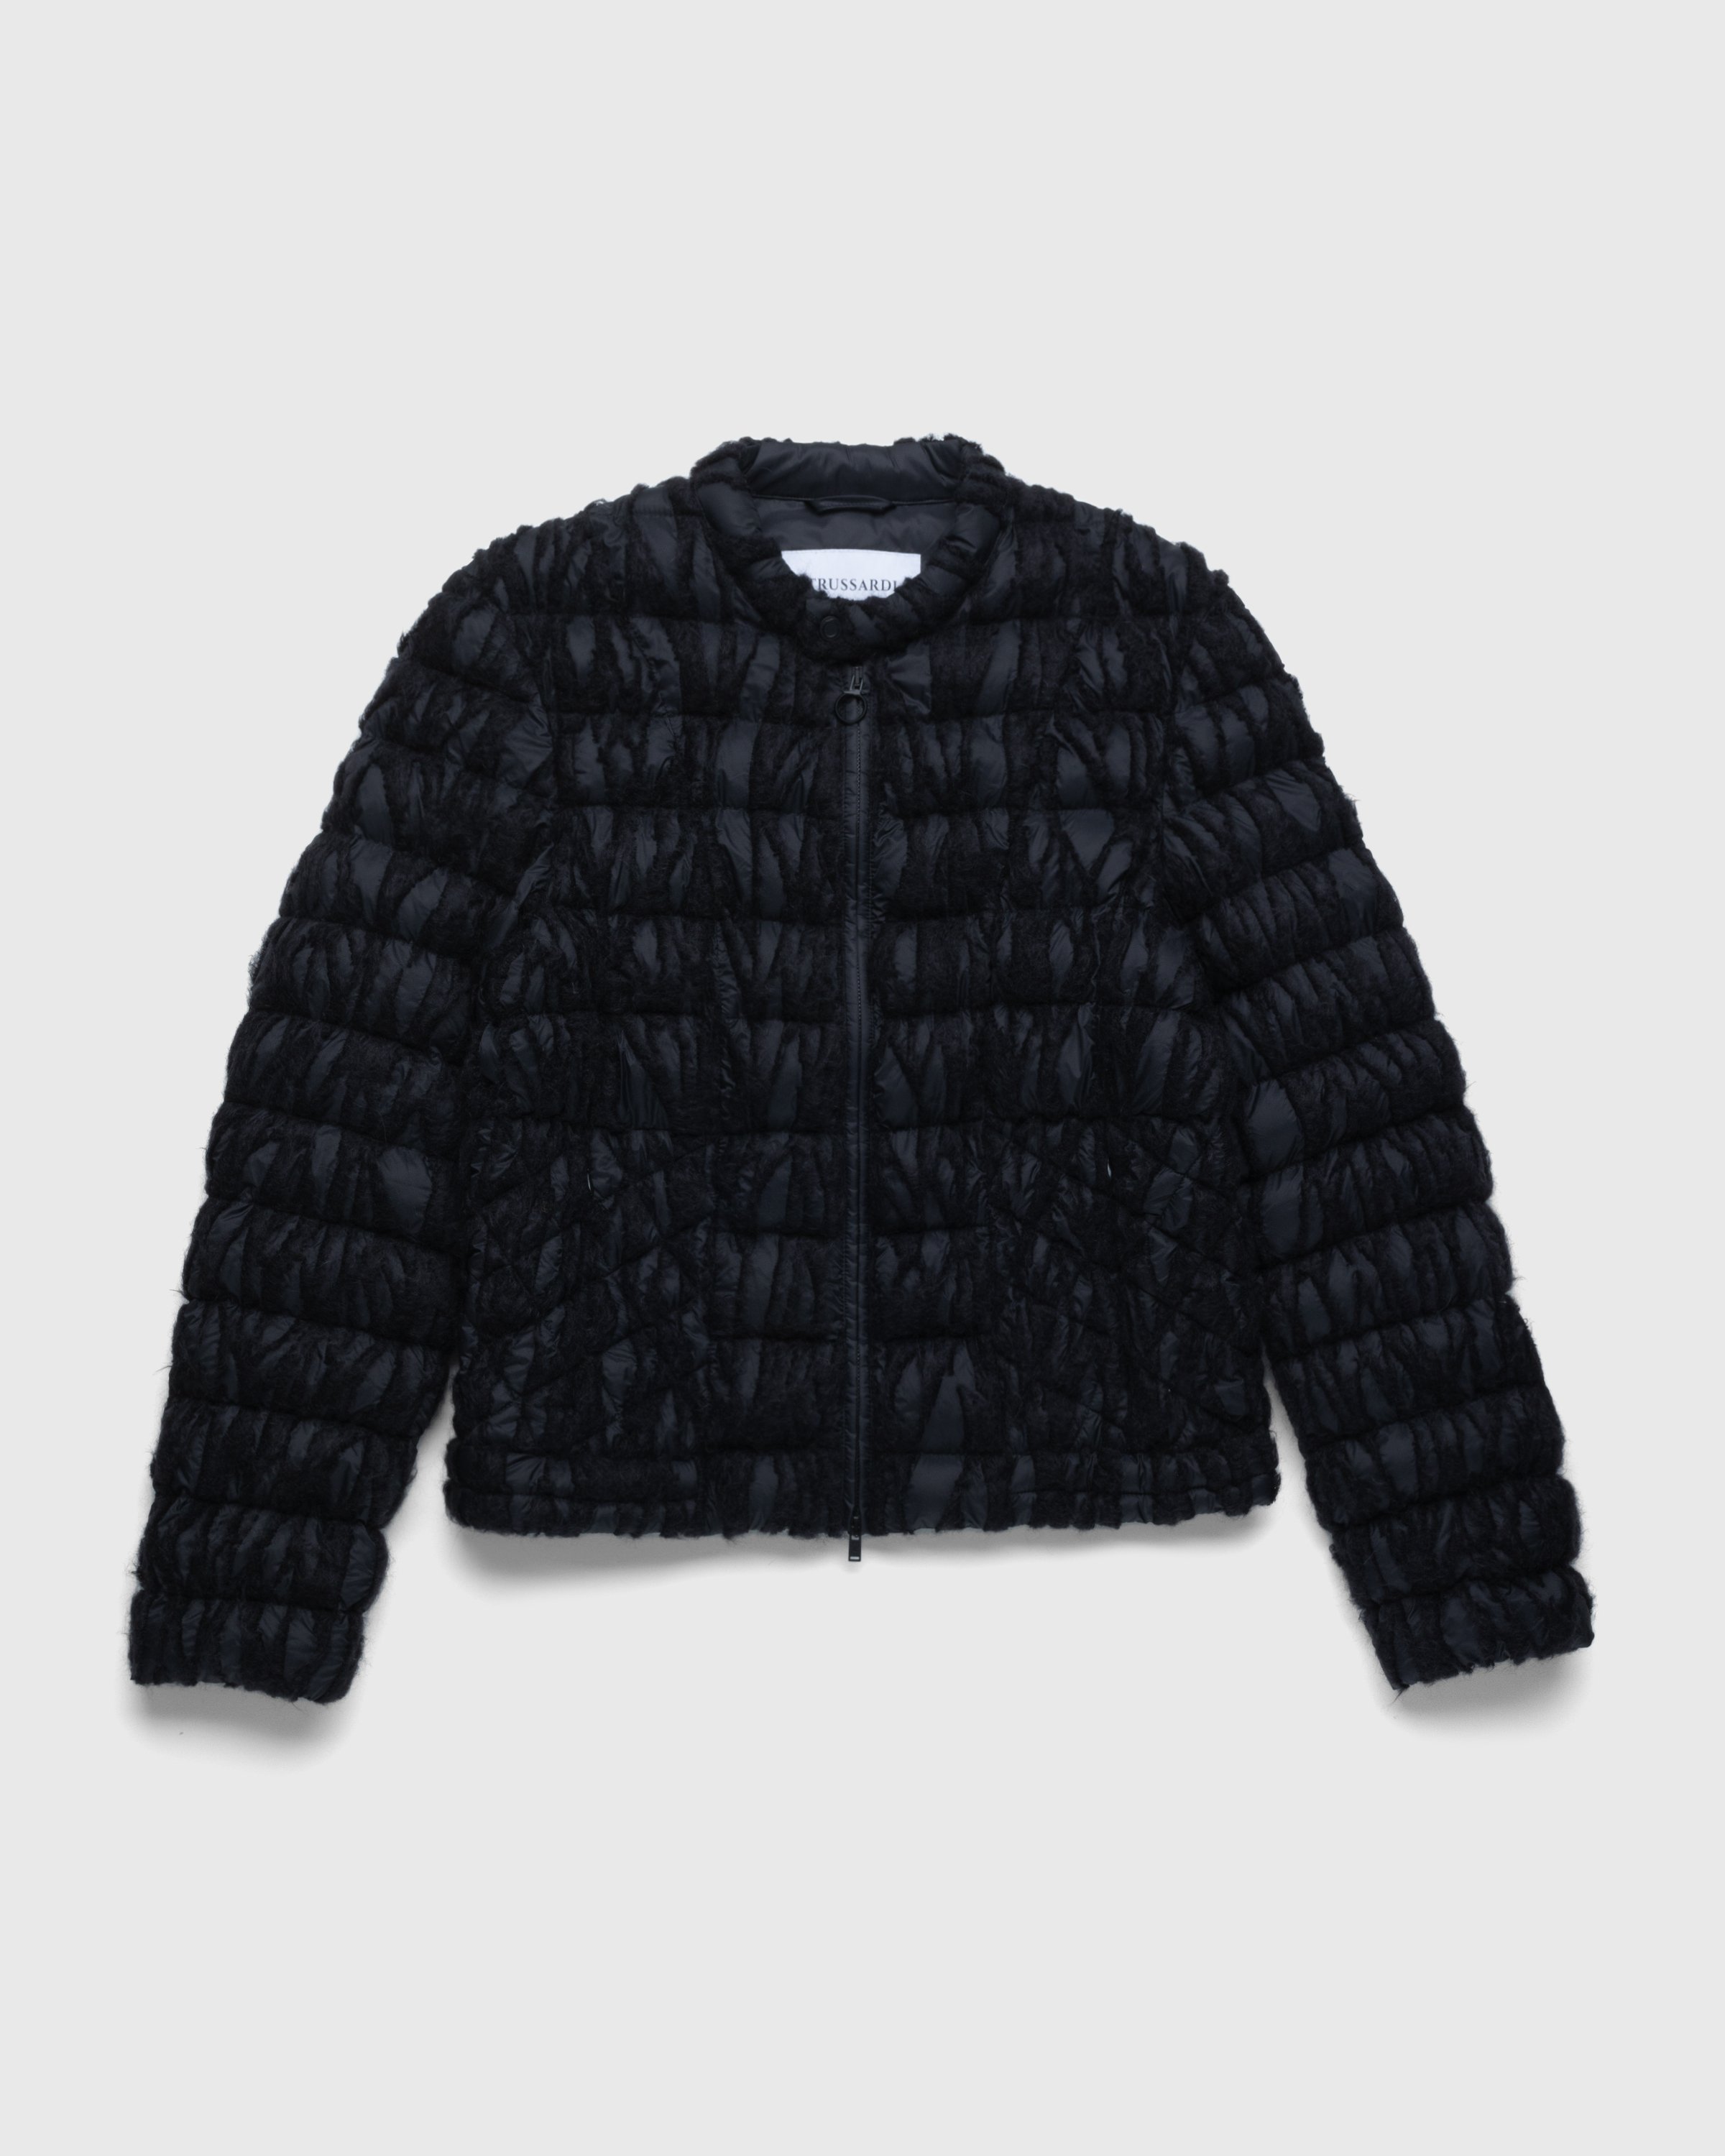 Trussardi - Embroidered Nylon Jacket Black - Clothing - Black - Image 1